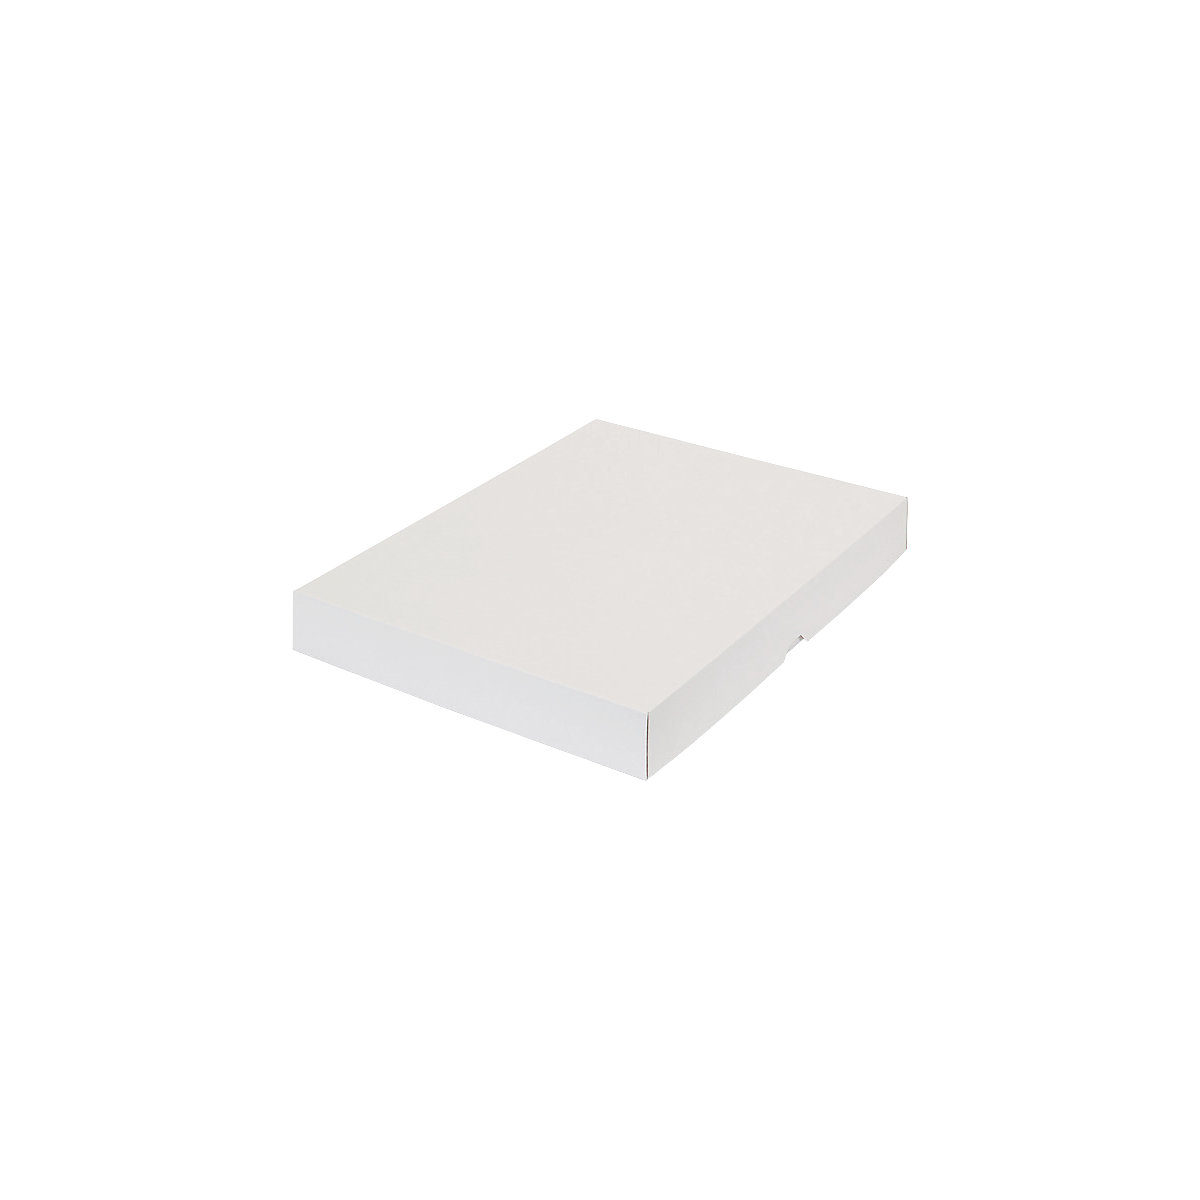 Stülpdeckelkarton, zweiteilig, Innenmaße 435 x 315 x 50 mm, A3, weiß, ab 10 Stk-35